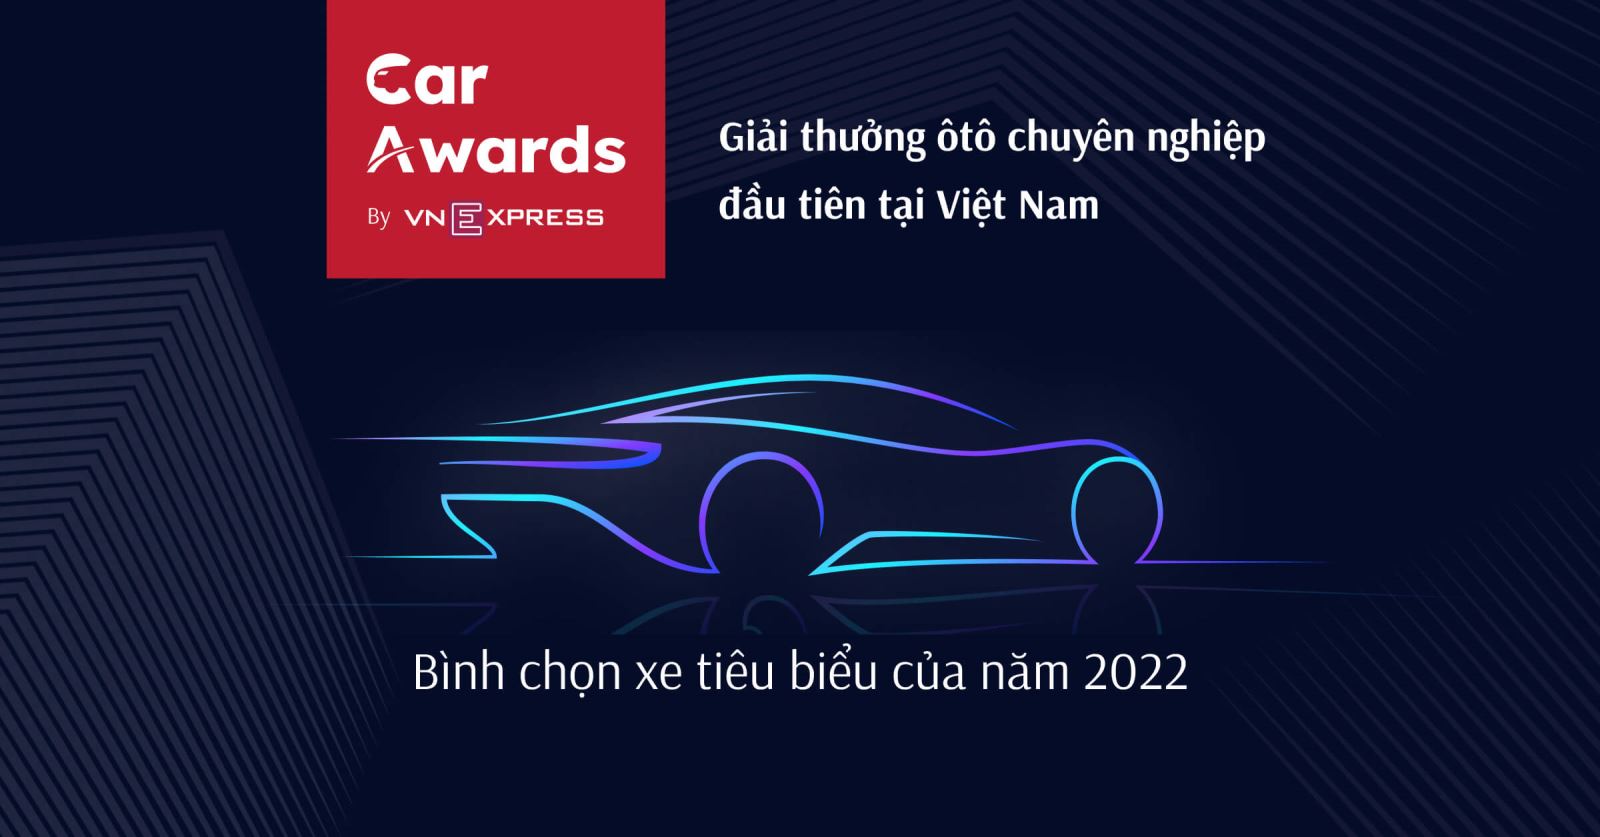 Car Awards by VNEpress - Giải thưởng ô tô chuyên nghiệp đầu tiên tại Việt Nam